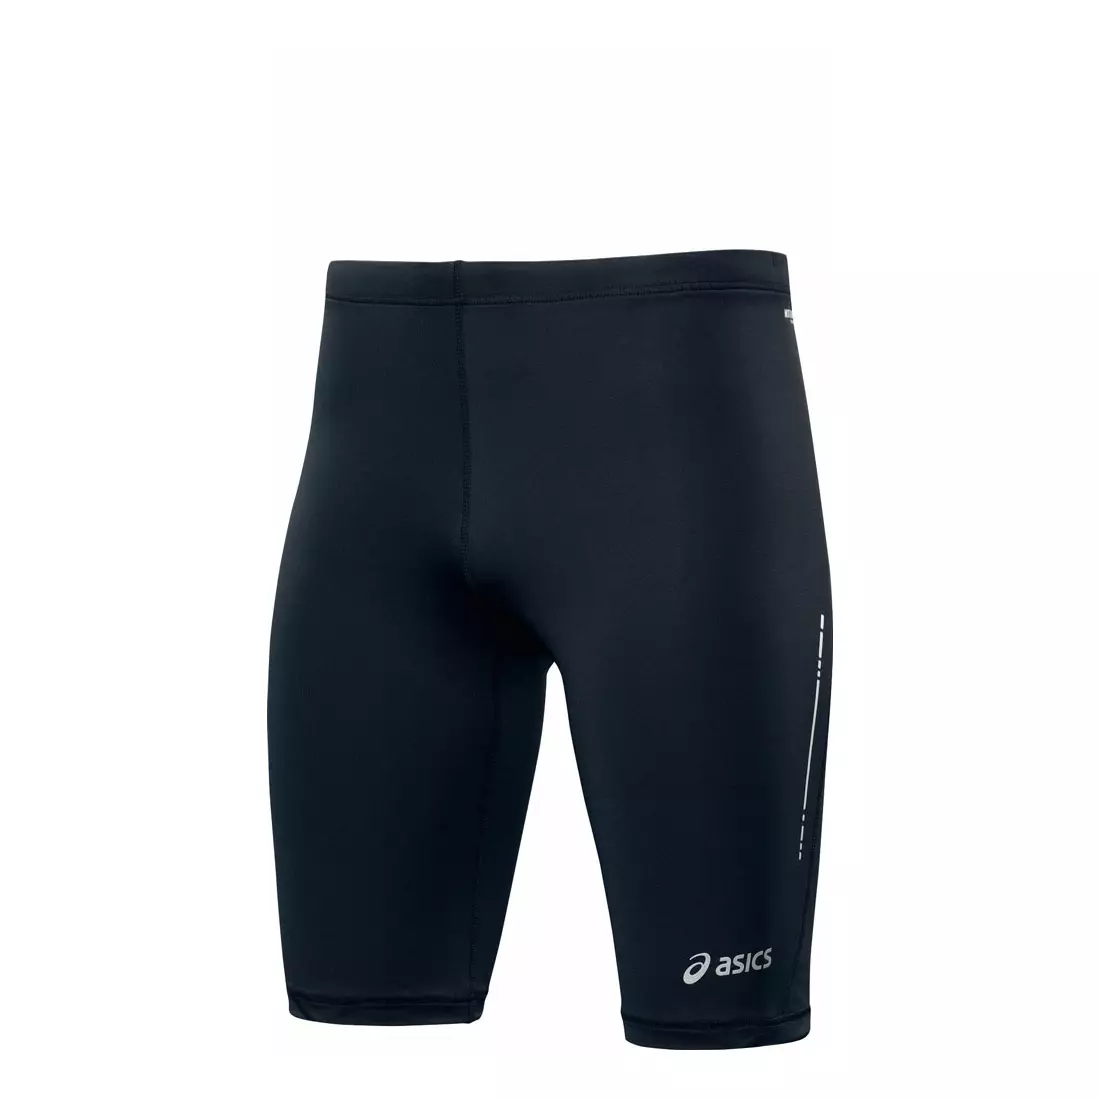 ASICS 110415-0904 - pantaloni scurți SPRINTER pentru bărbați, culoare: negru